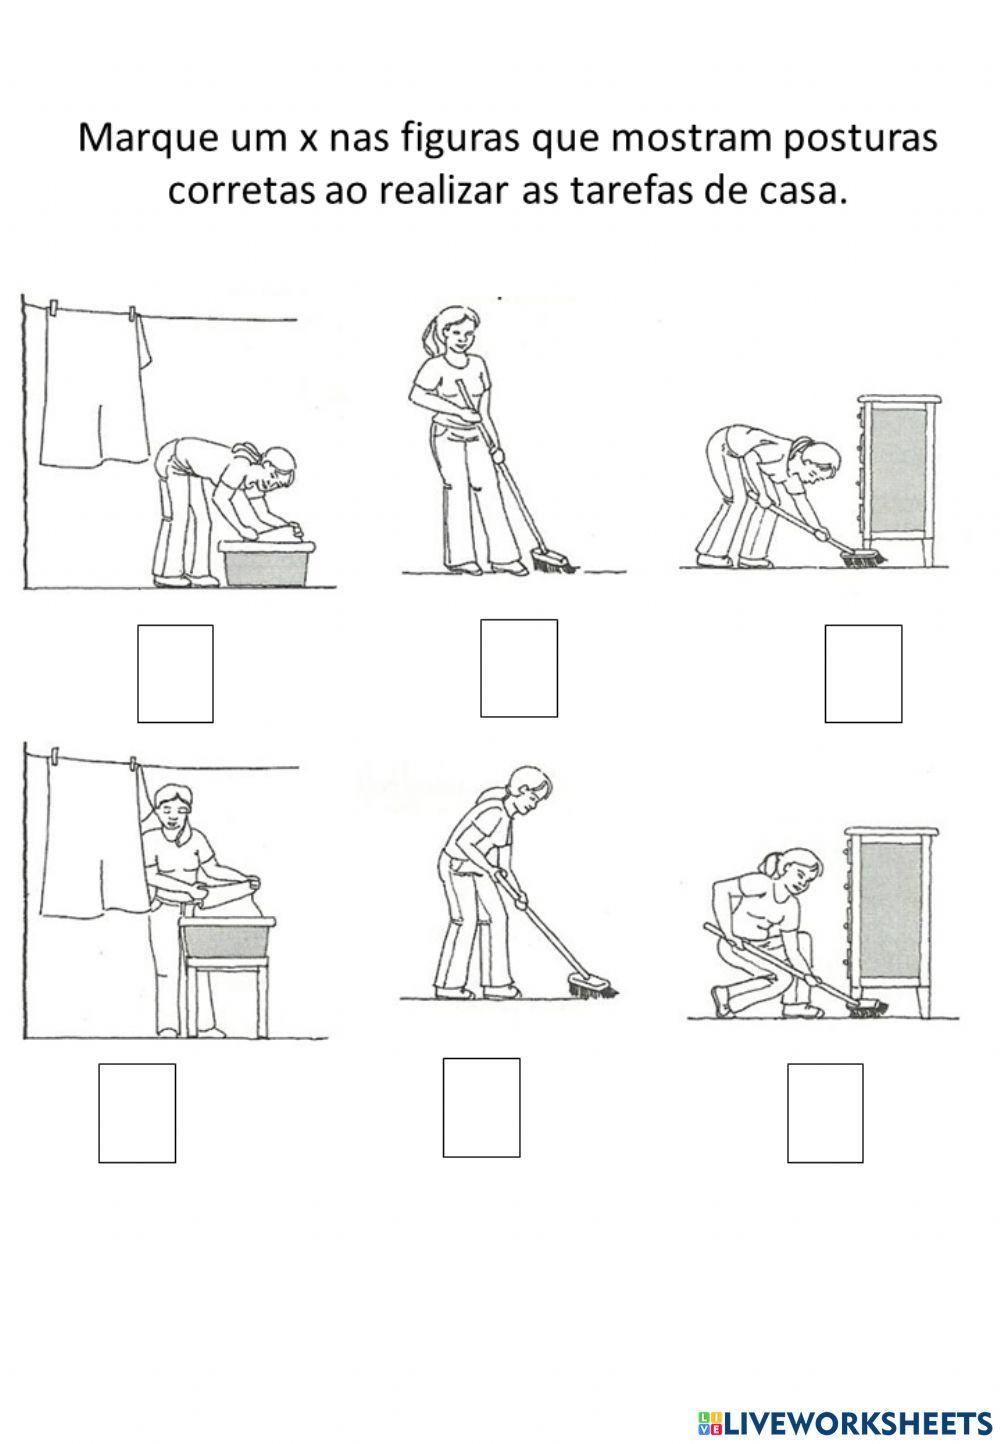 Marque um x nas figuras que mostram posturas corretas ao realizar as tarefas de casa.